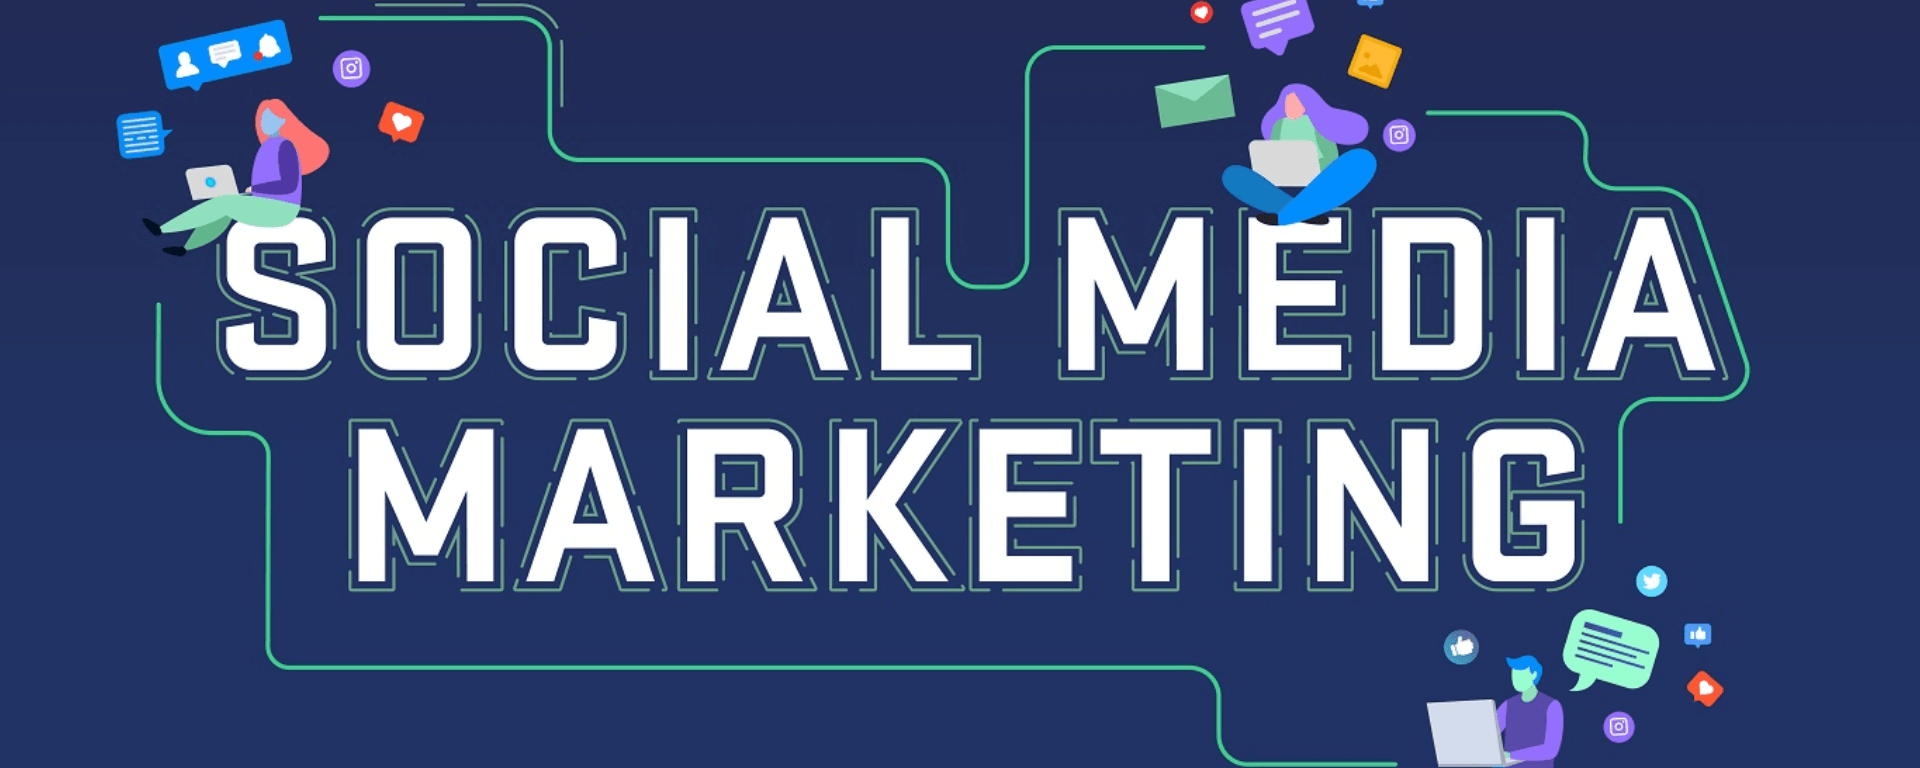 6 Principais Estratégias de Social Media Marketing para Alavancar o seu Negócio Online